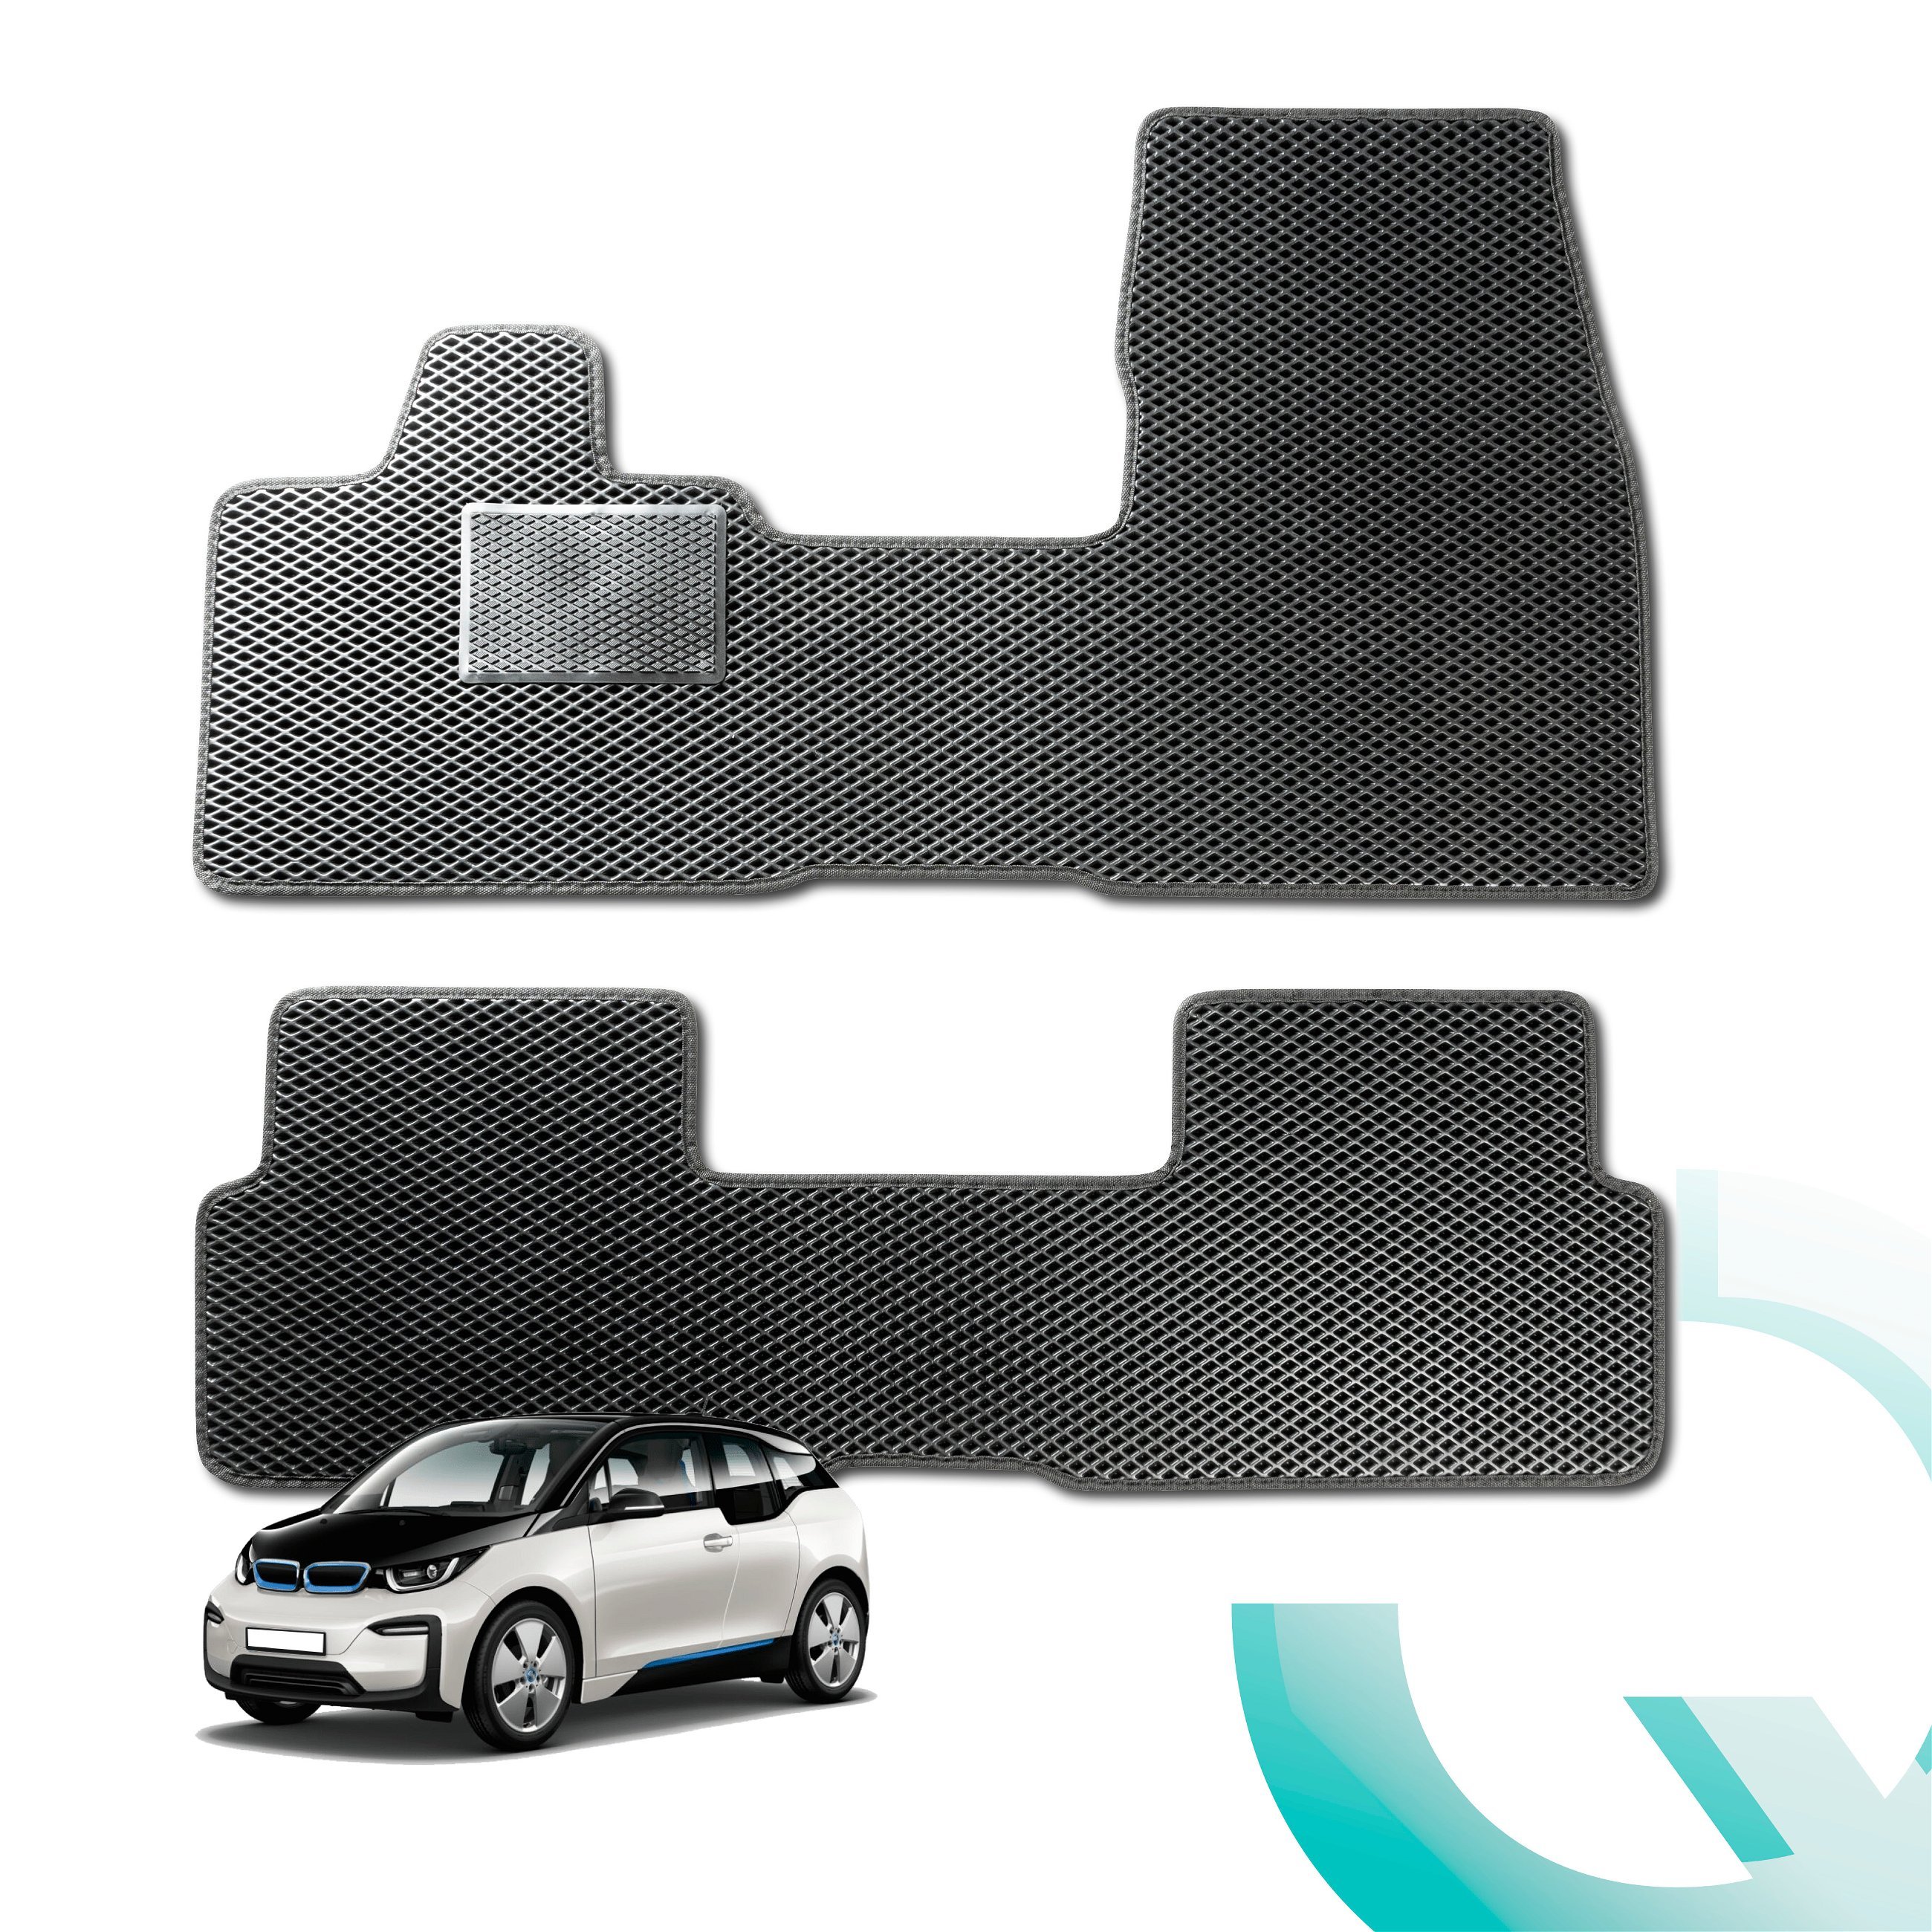 Tapis en caoutchouc Qlean Mats pour VW Tiguan 01/2016- Auj., tapis de sol pour voiture en matériau EVA